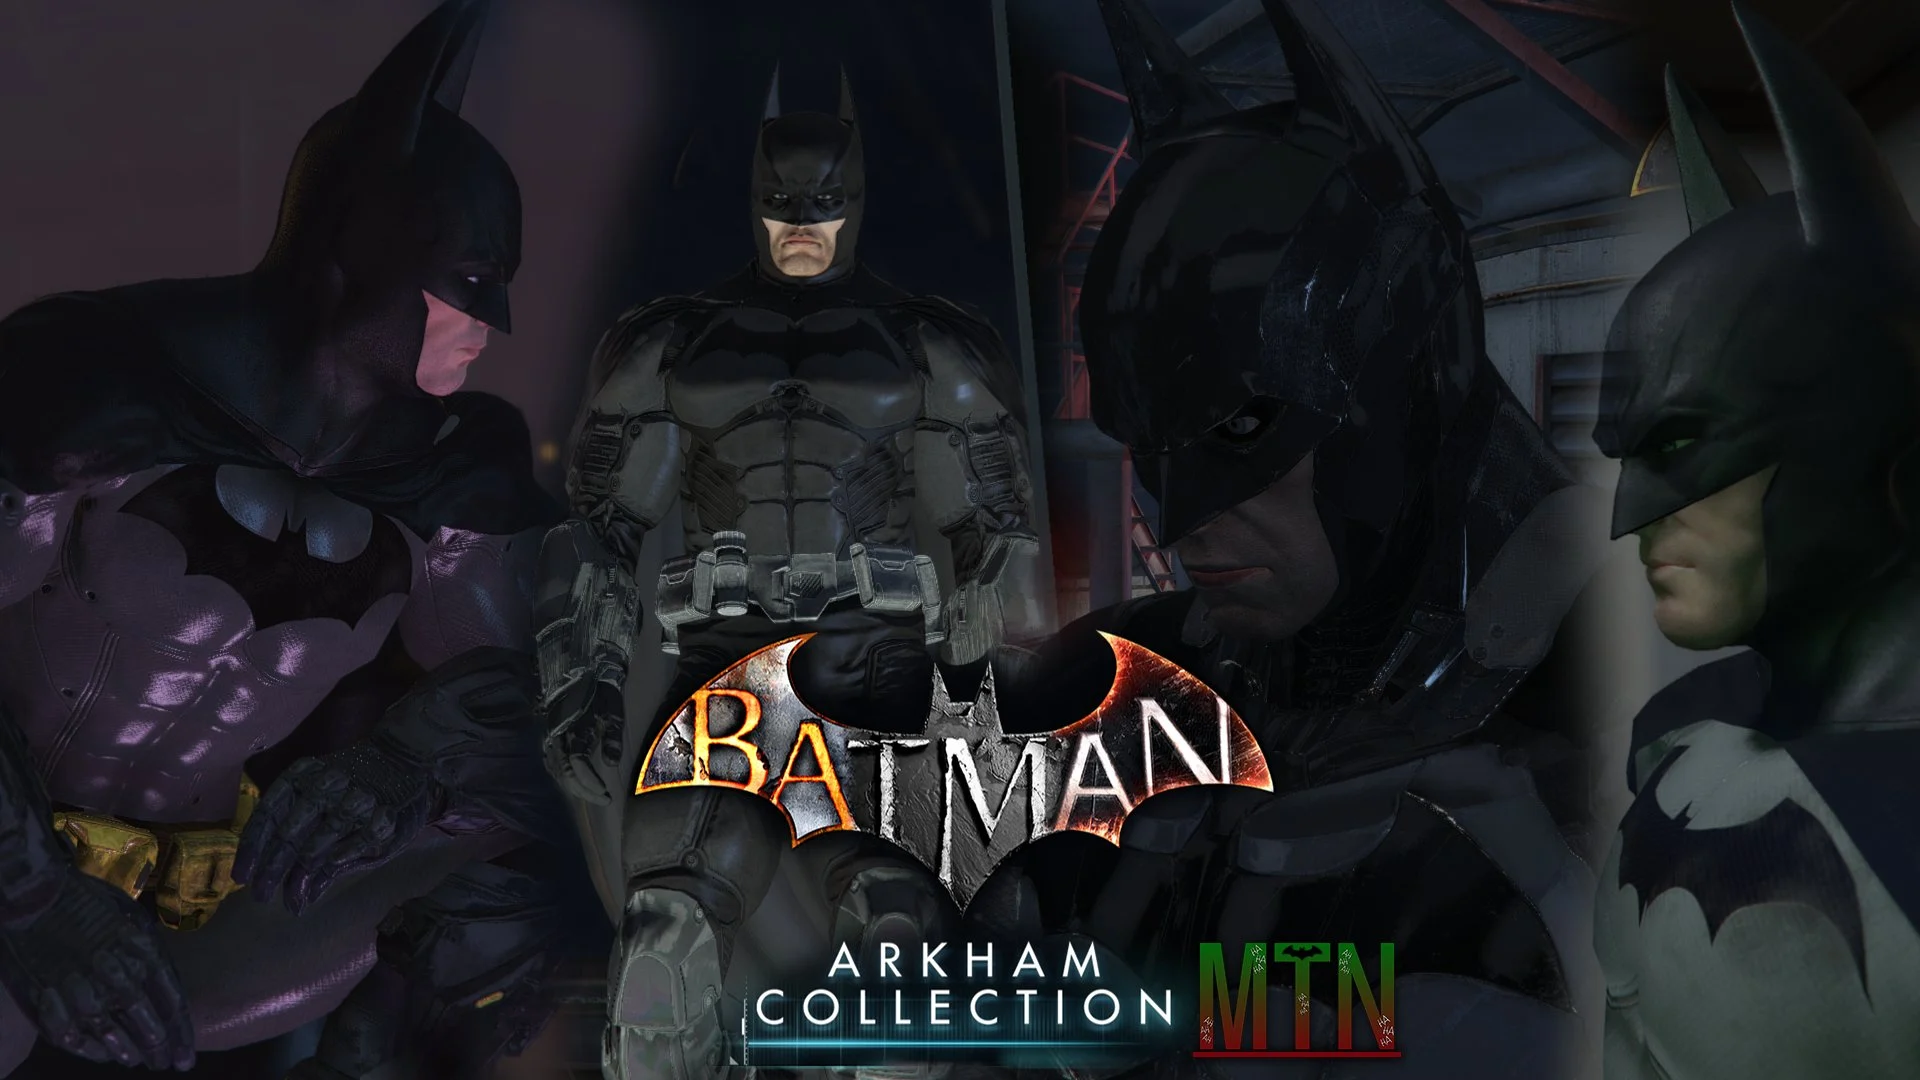 Бэтмен 5 букв. Бэтмен Аркхем коллекшн. Batman Arkham collection бои. Batman: Arkham Origins. Batman Arkham collection (ps4).